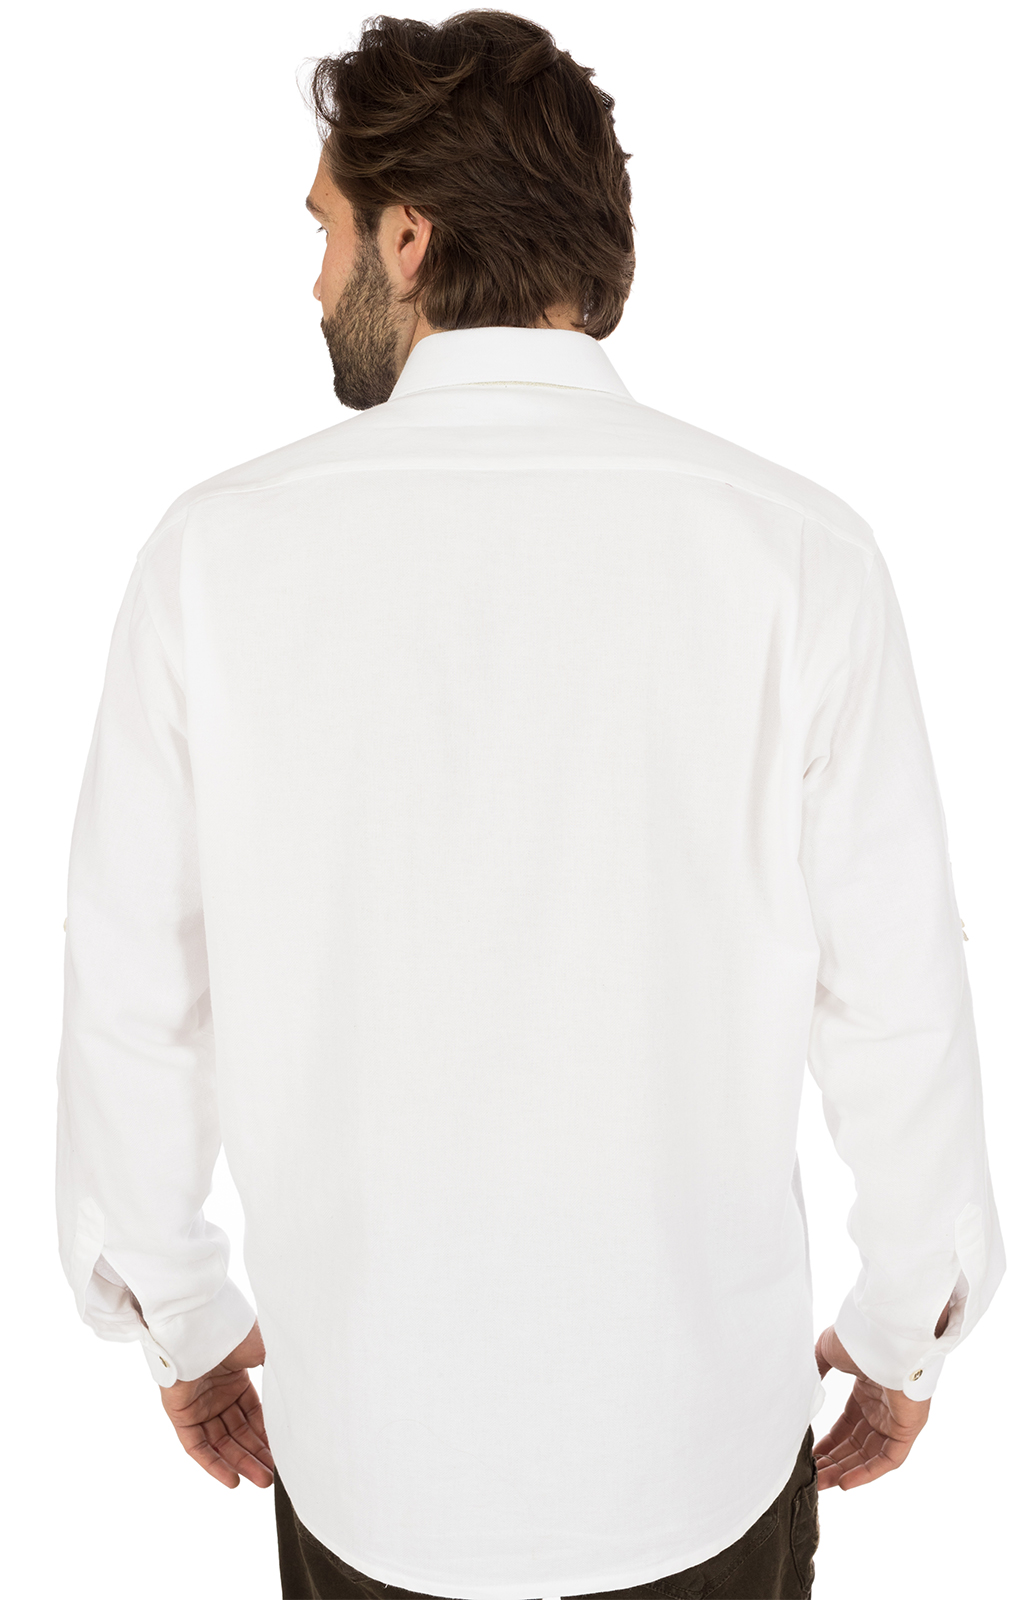 weitere Bilder von German traditional shirt white